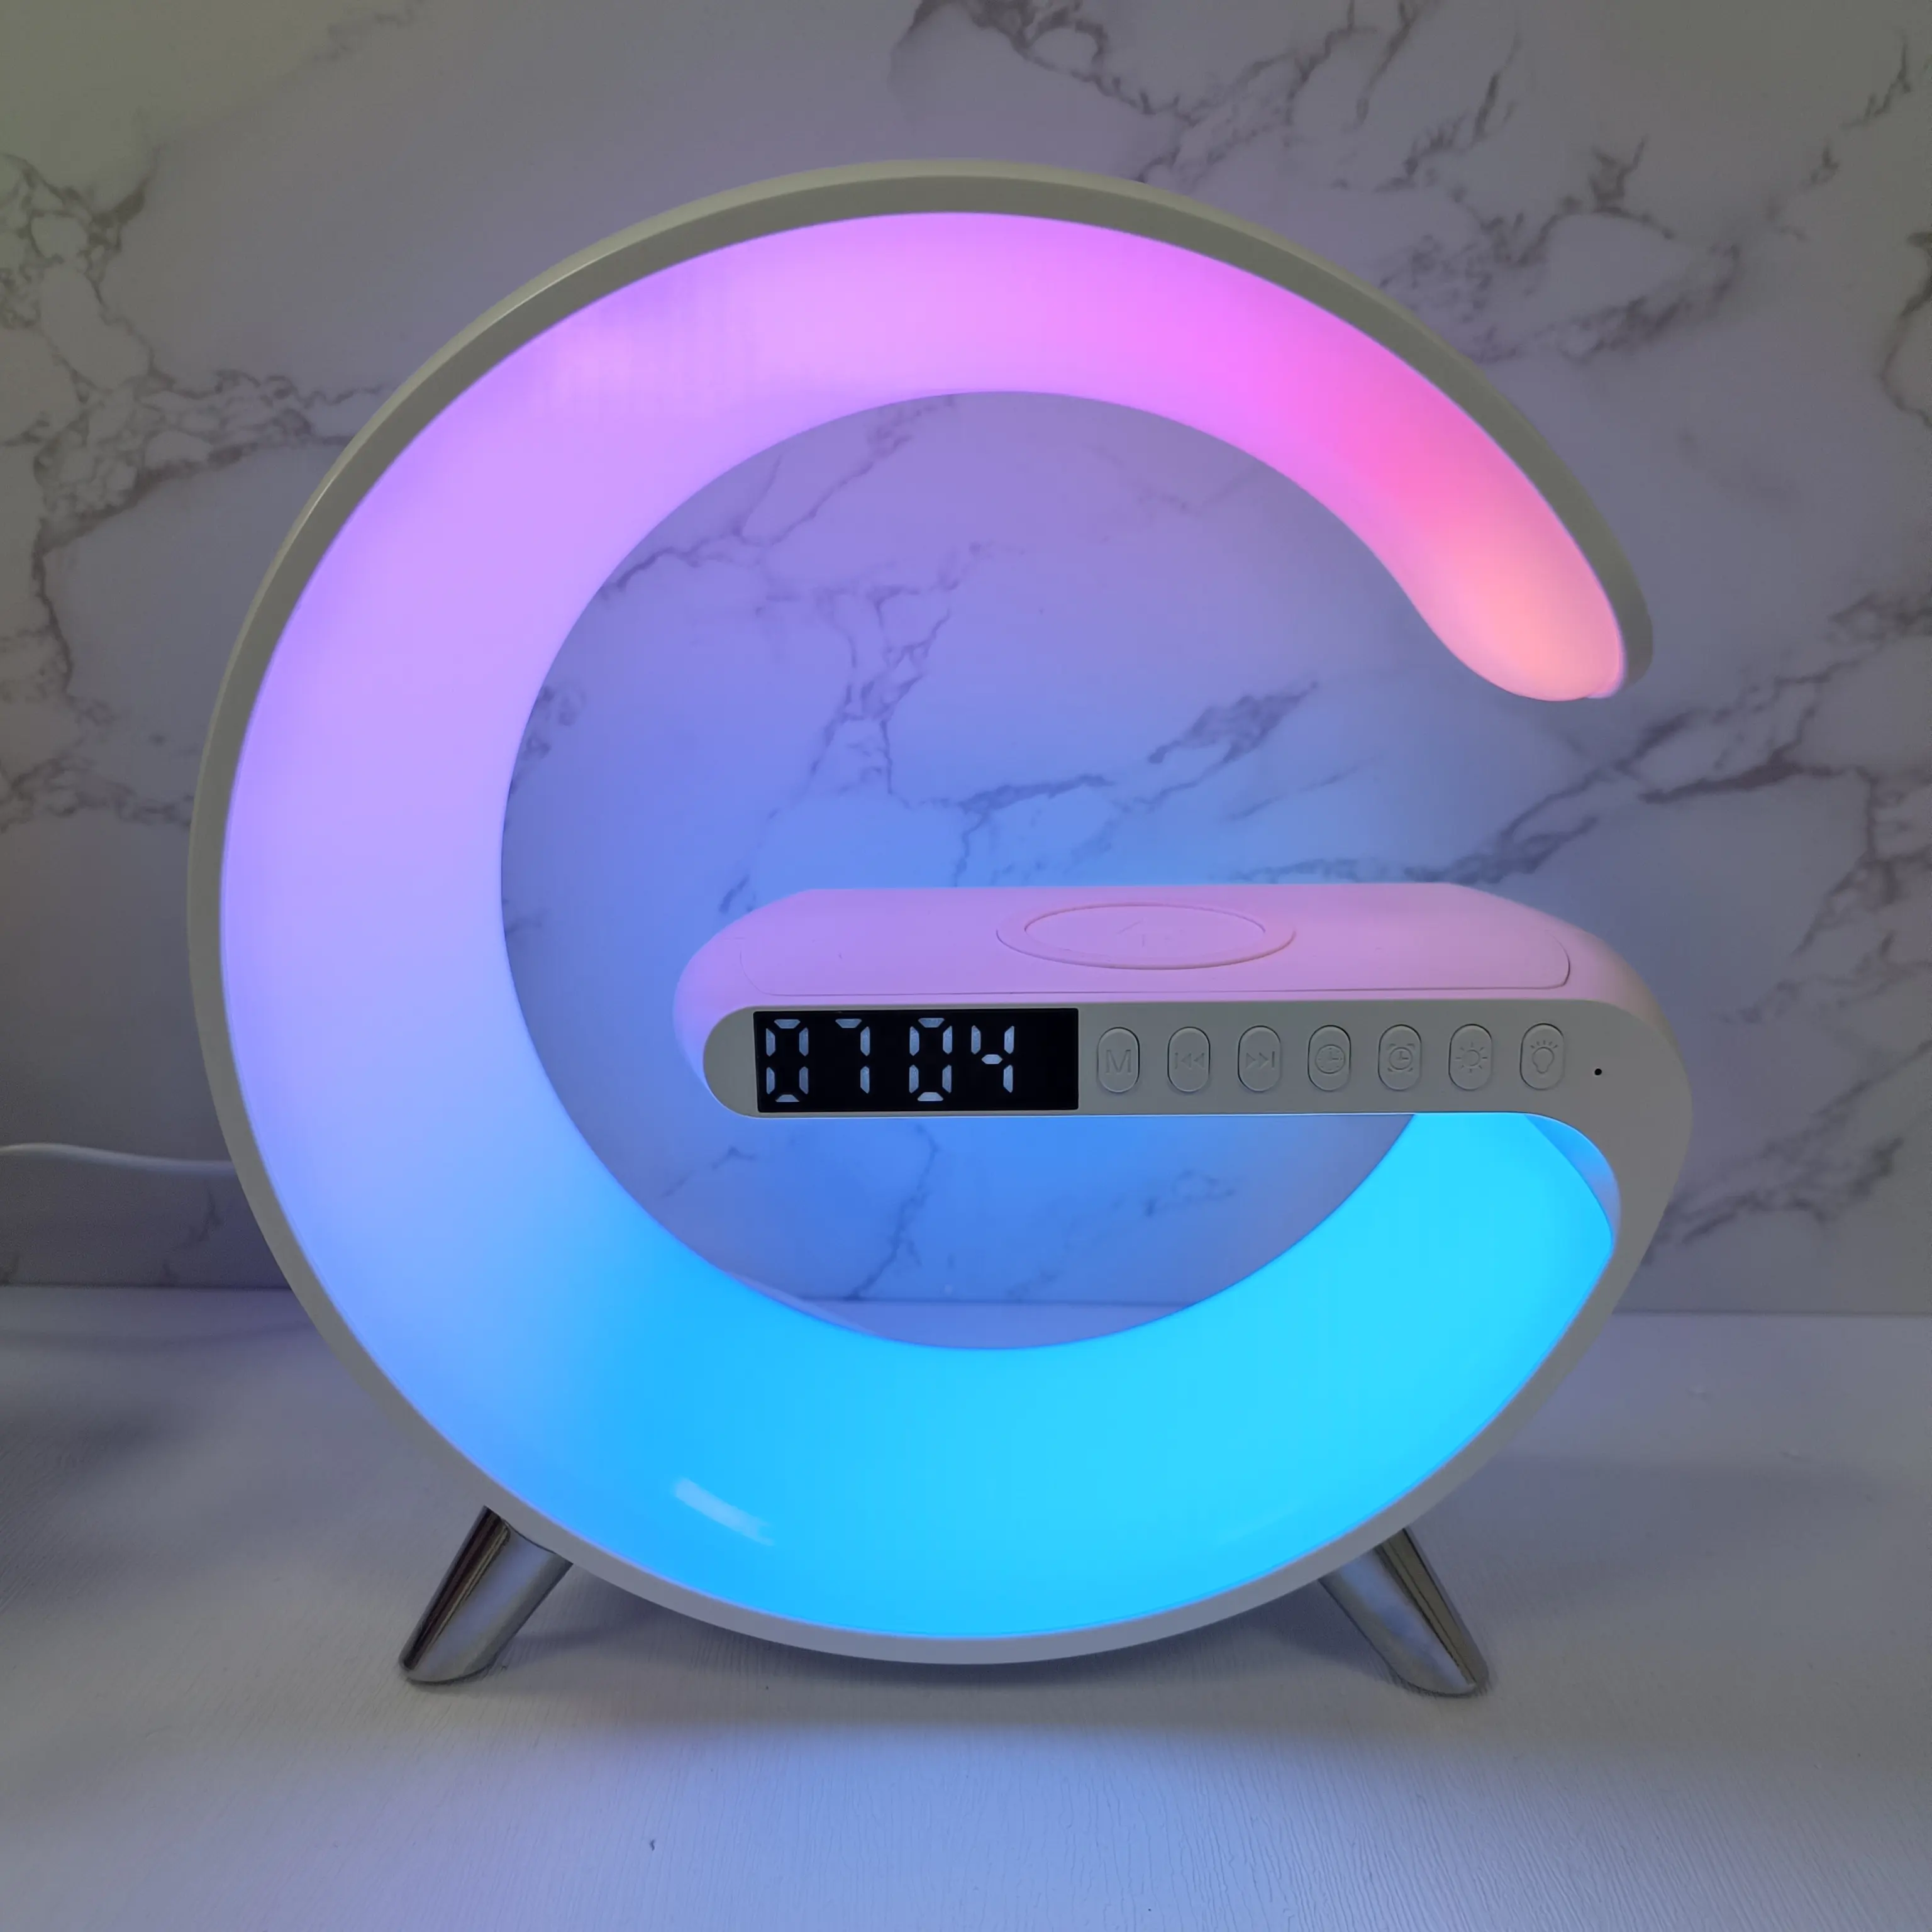 N69 웨이크 업 라이트 RGB 다채로운 주변 야간 조명 알람 시계가있는 무선 충전 BT 스피커